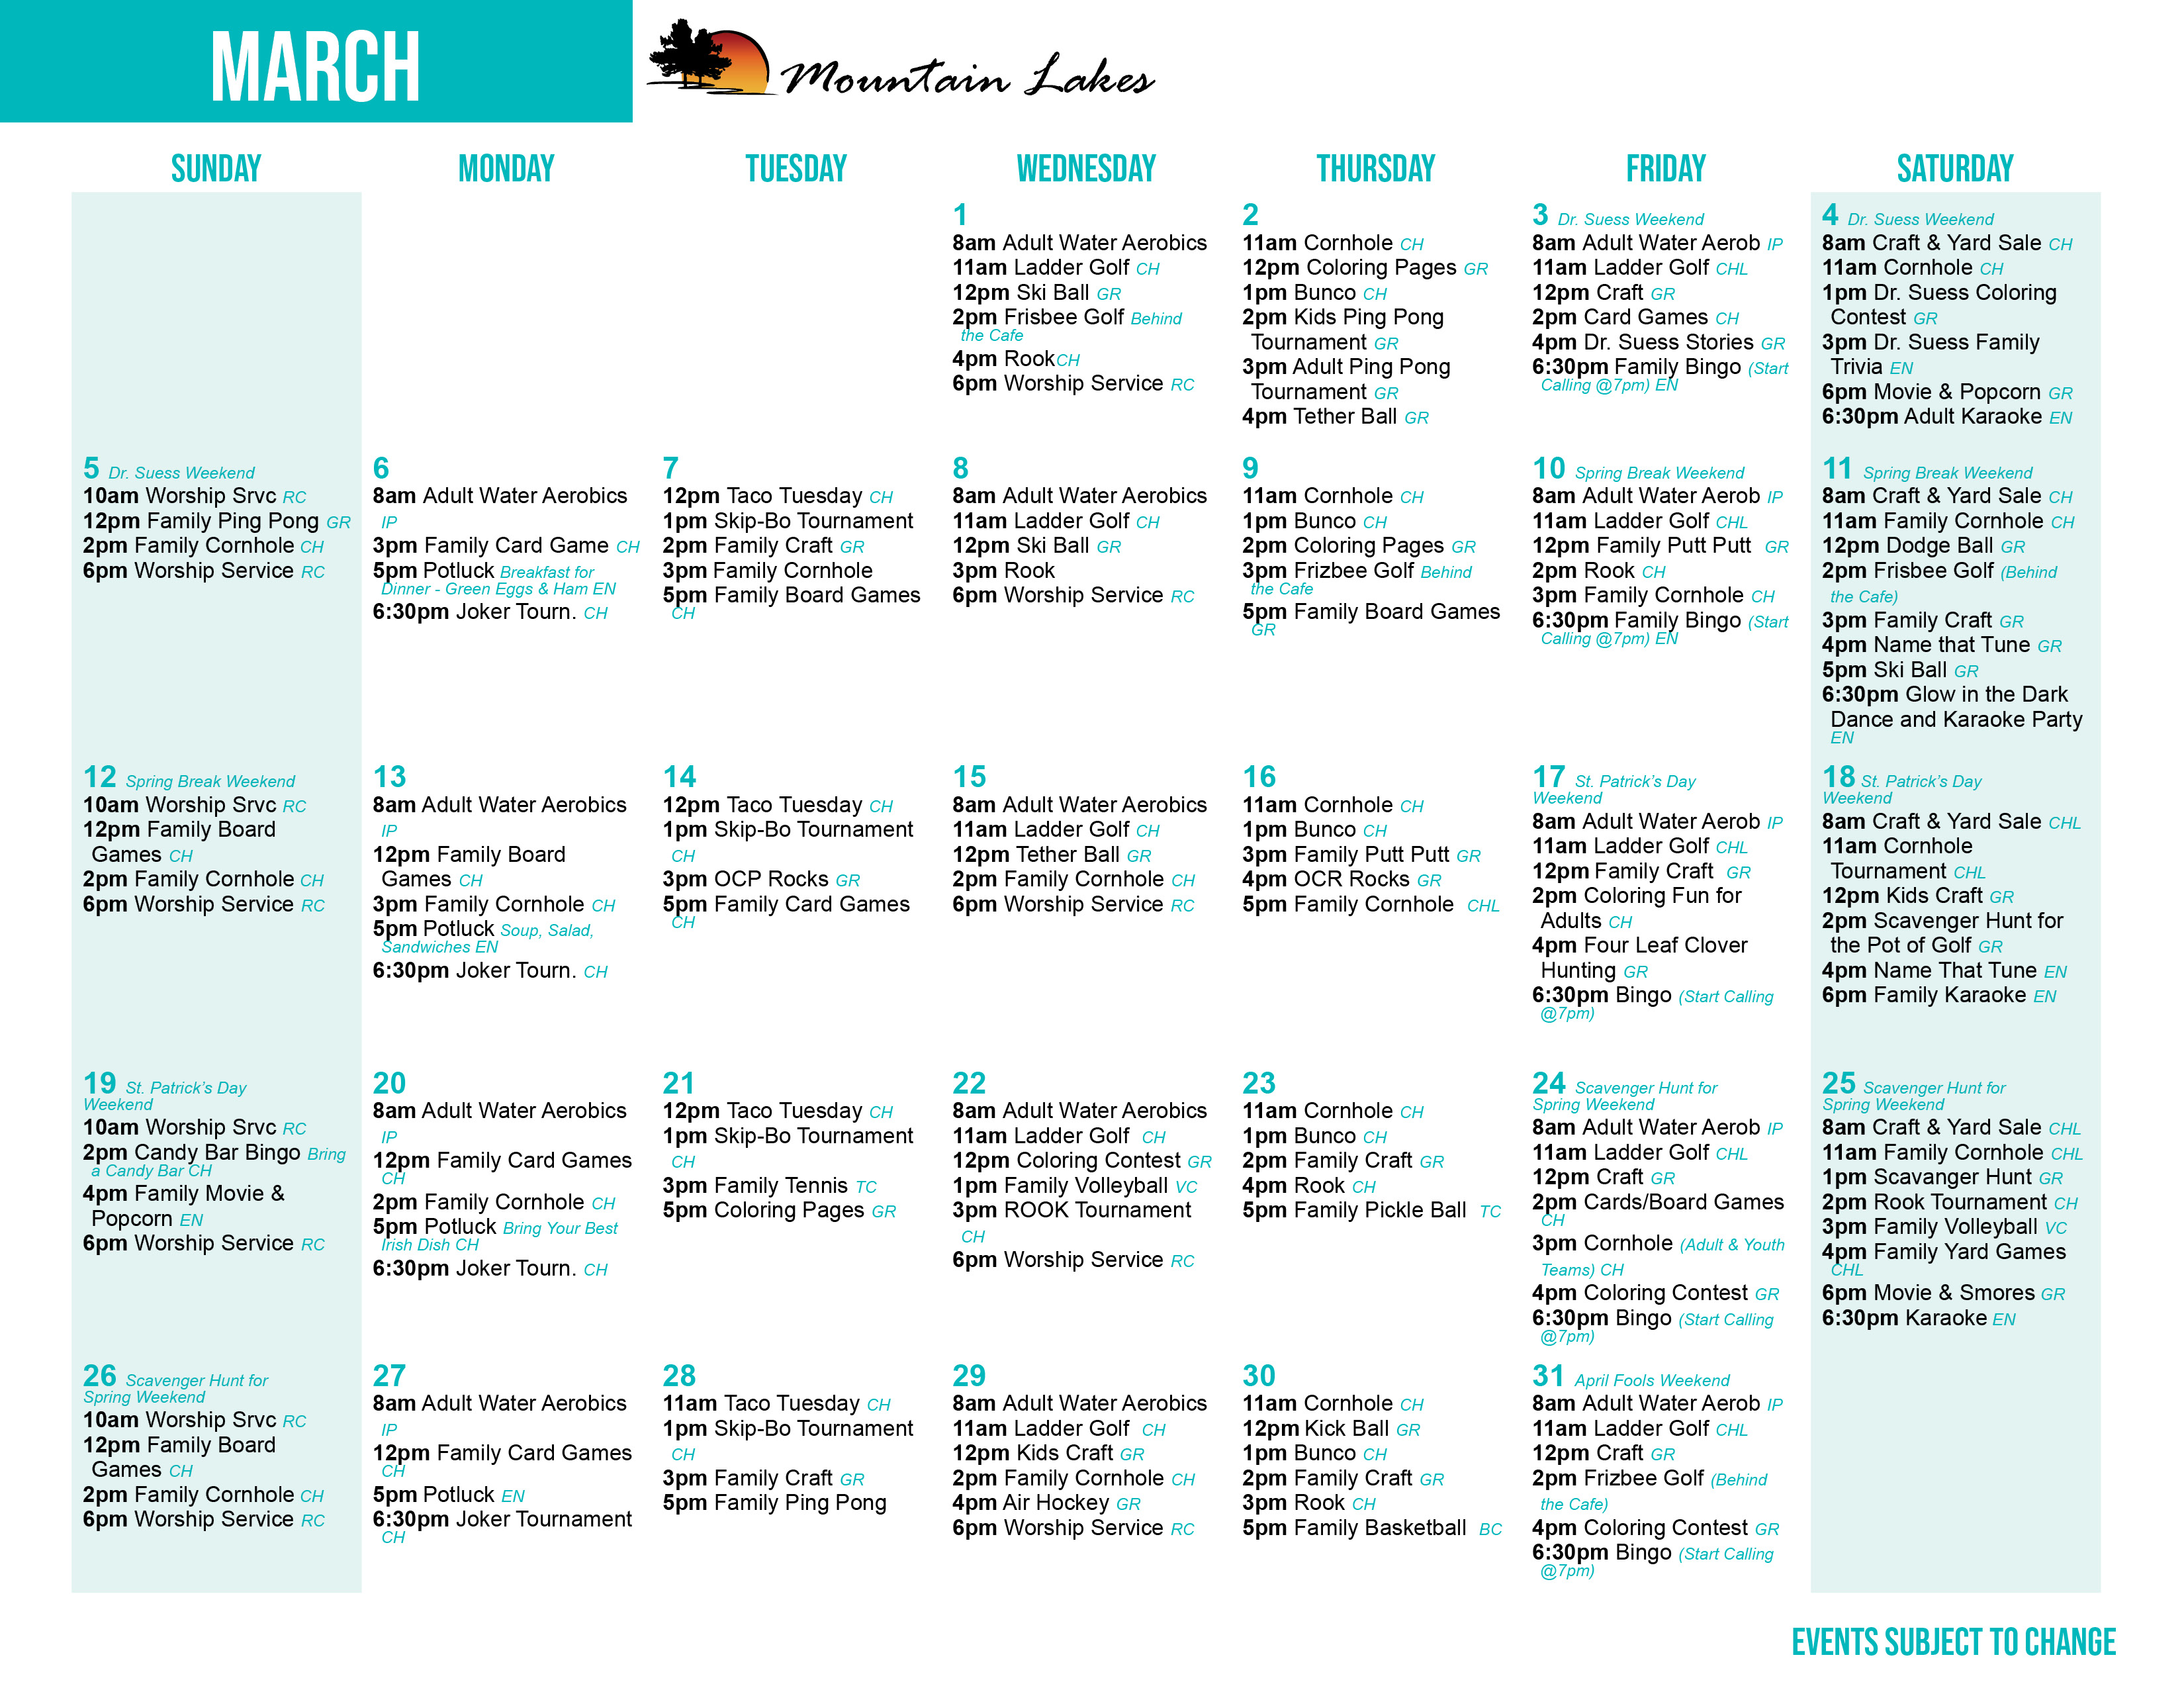 Mountain Lake's March Activity Calendar